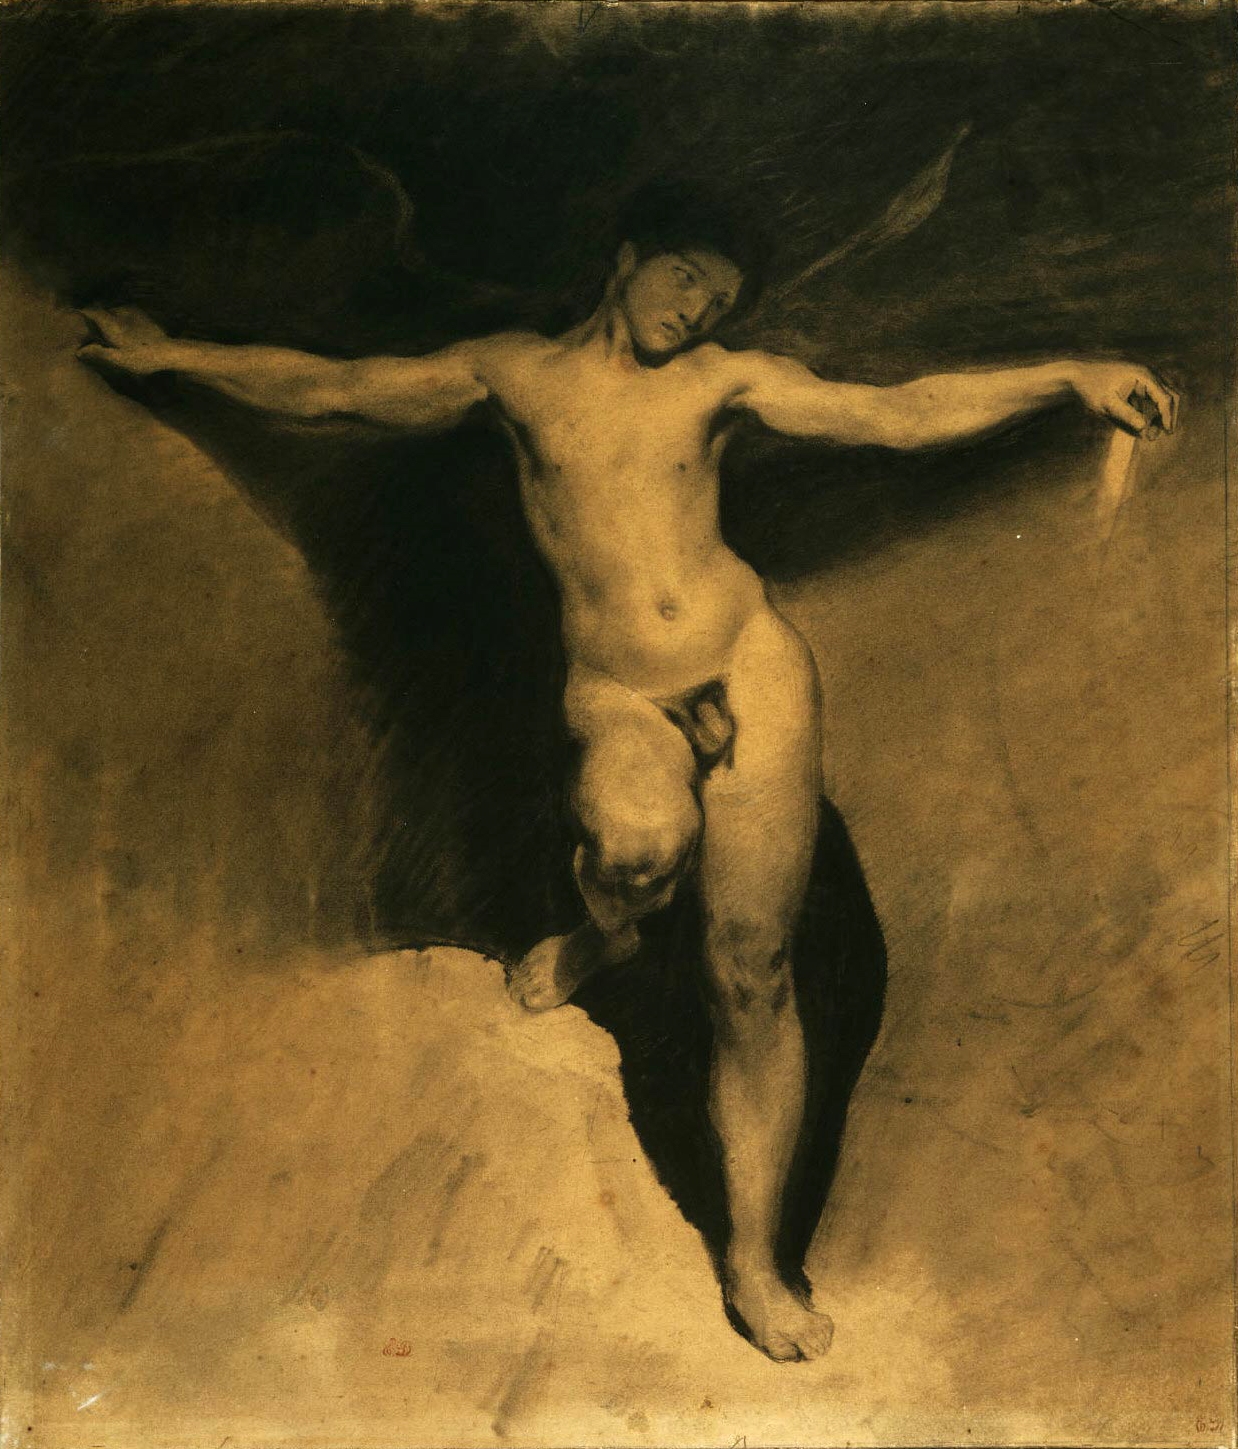 Eugene+Delacroix-1798-1863 (81).jpg